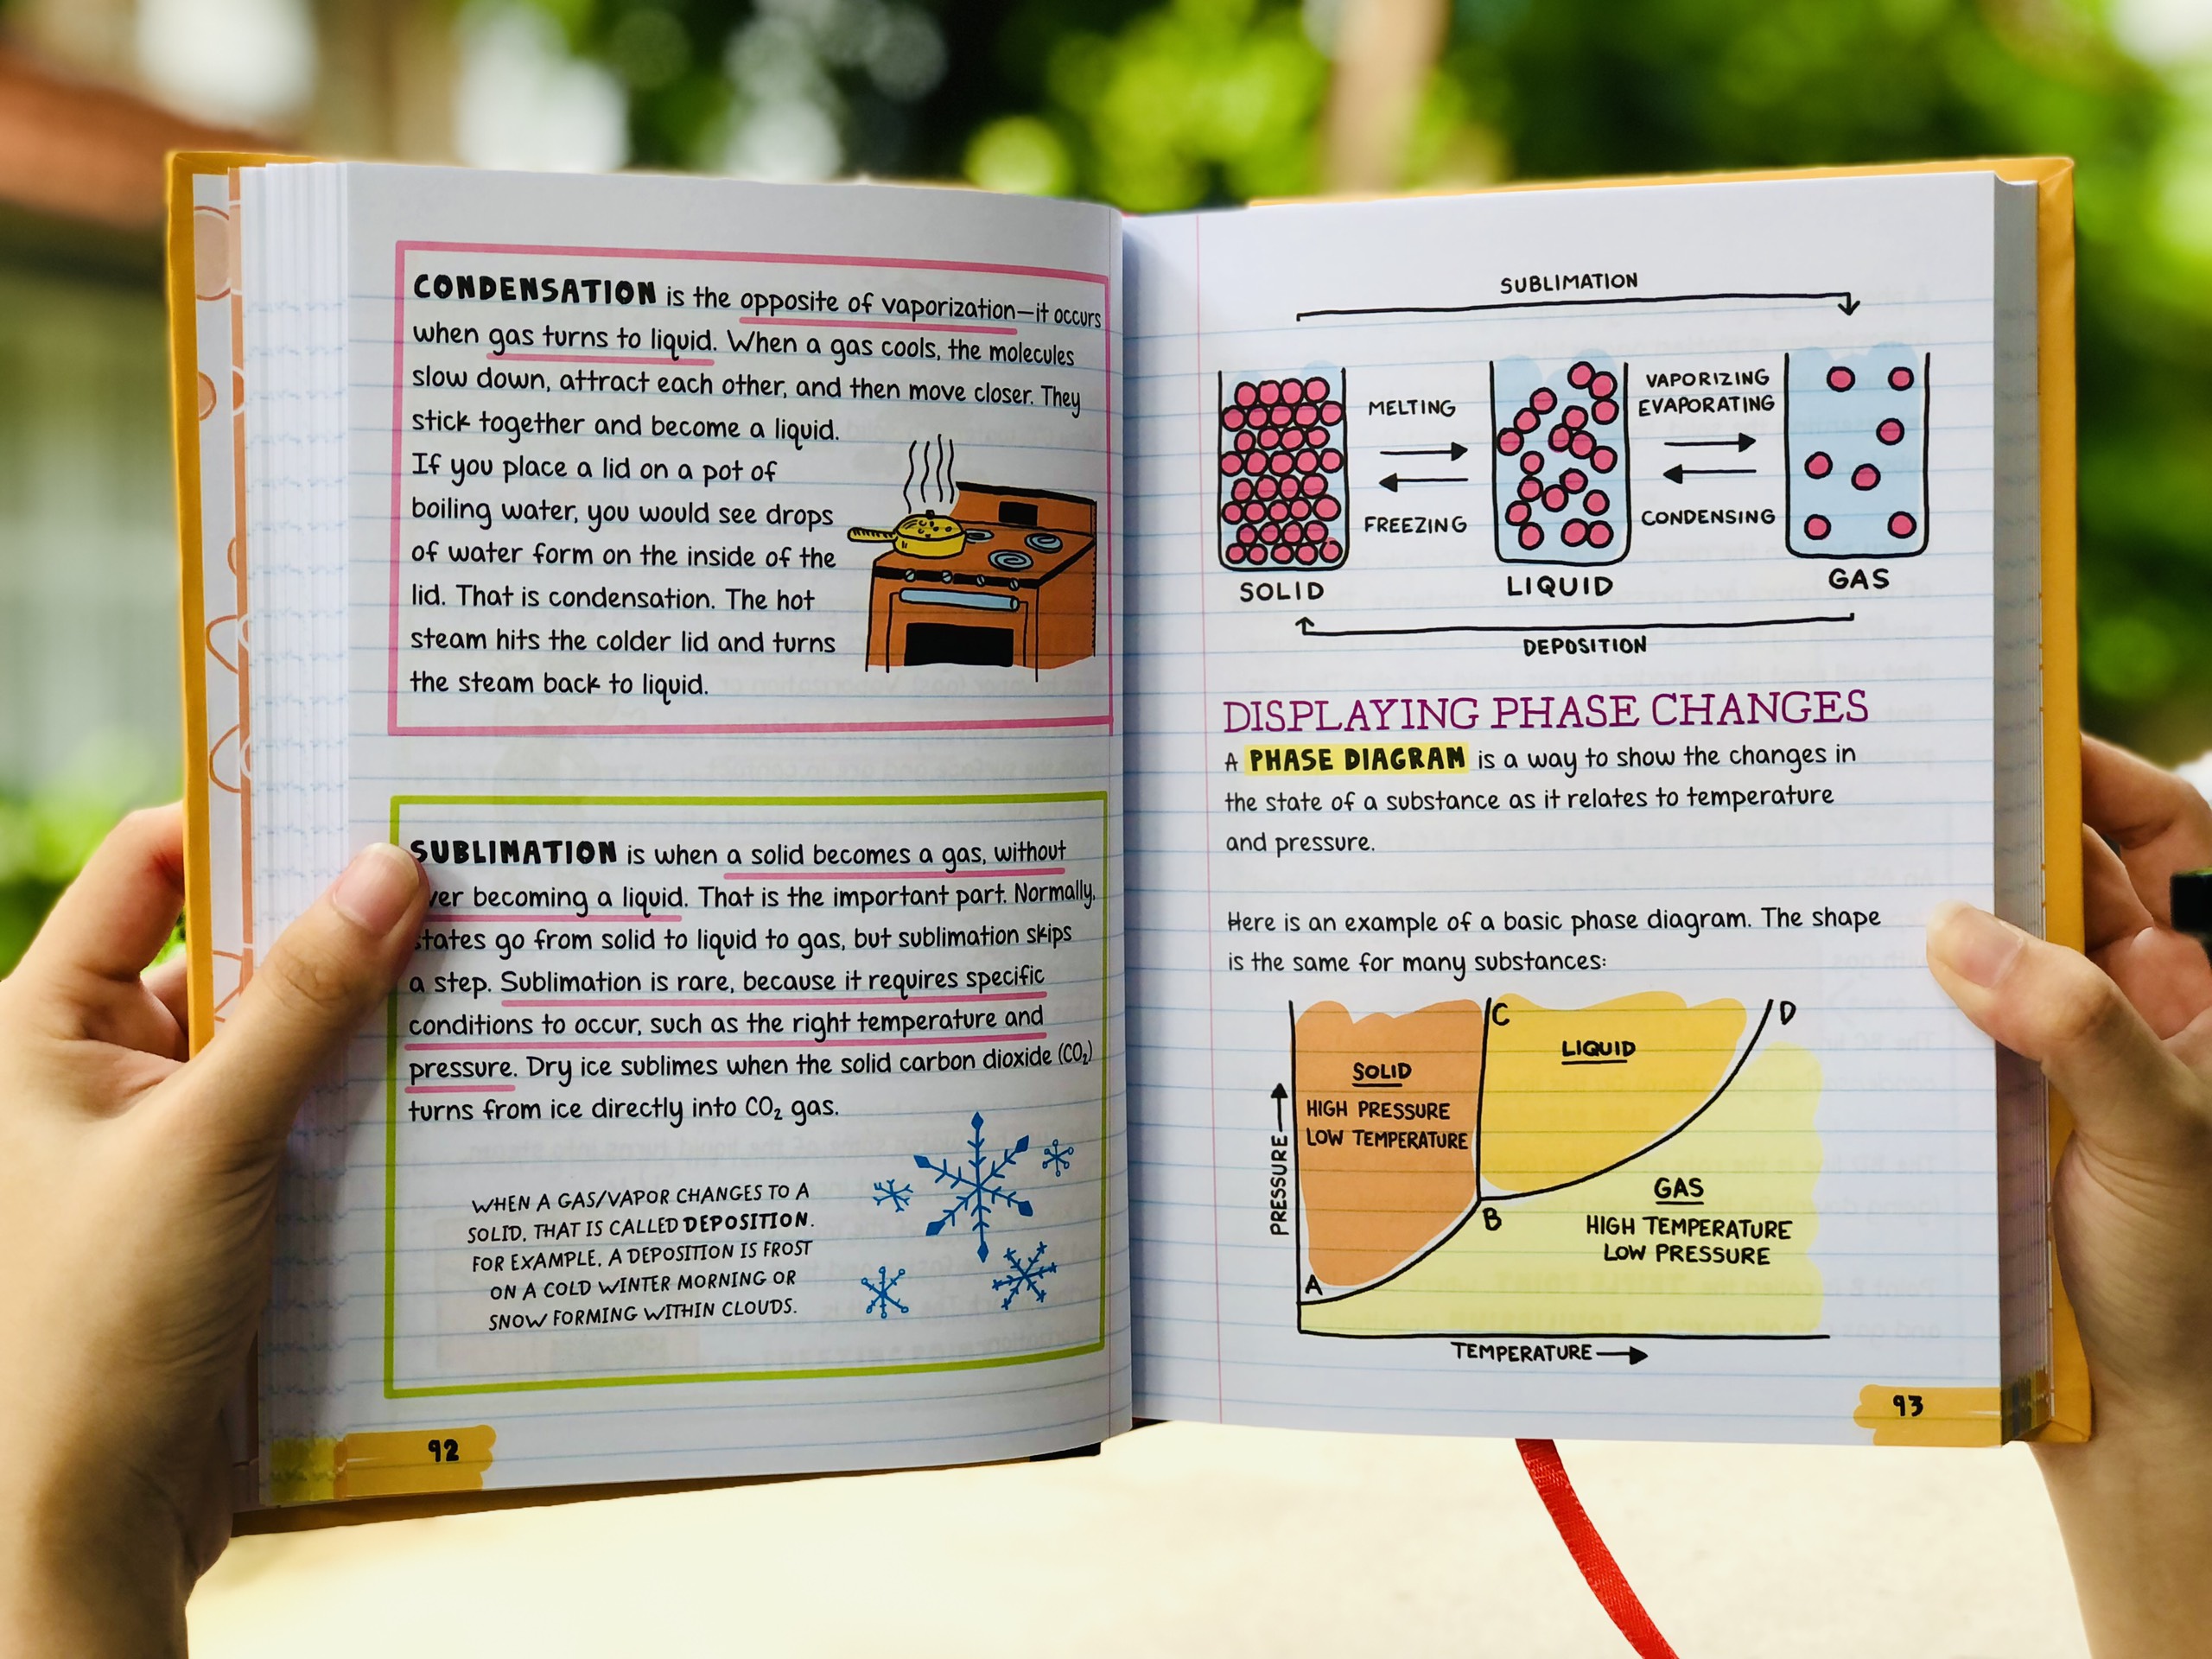 Sách Everything you need to ace Chemistry and Geometry - Sổ Tay Hóa Học và Sổ Tay Hình Học ( Bộ 2 cuốn Tiếng Anh ), Tổng Hợp Kiến Thức Hình Học Và Hóa Học Cho Học Sinh Lớp 8 Đến Lớp 12 - Á Châu Books, bìa cứng in màu